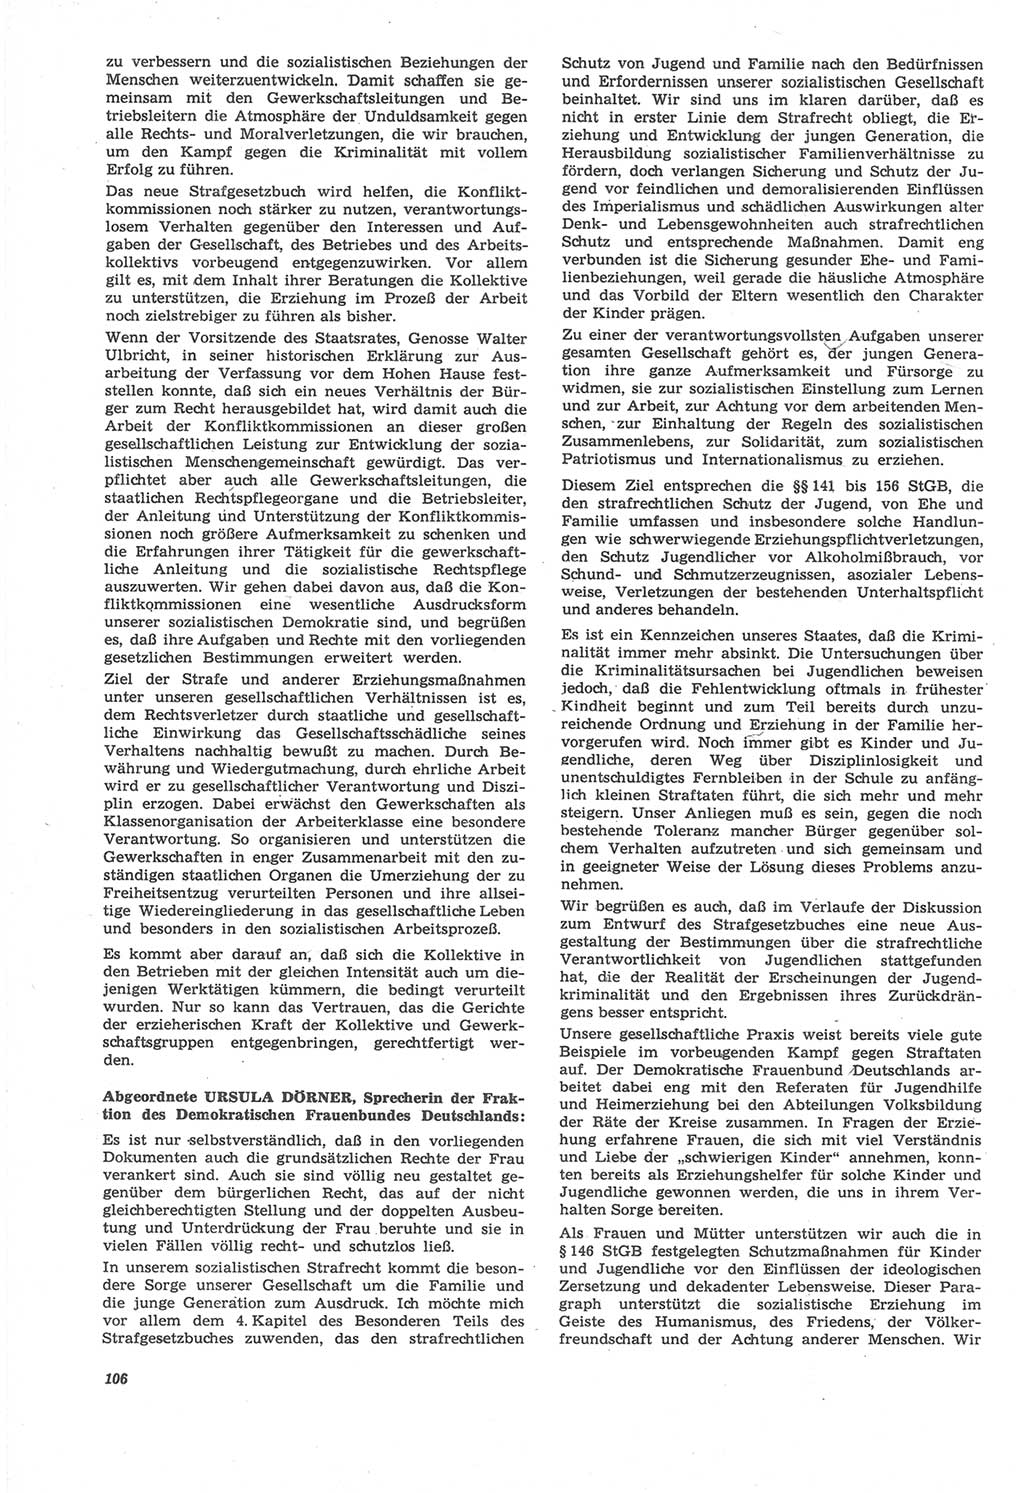 Neue Justiz (NJ), Zeitschrift für Recht und Rechtswissenschaft [Deutsche Demokratische Republik (DDR)], 22. Jahrgang 1968, Seite 106 (NJ DDR 1968, S. 106)